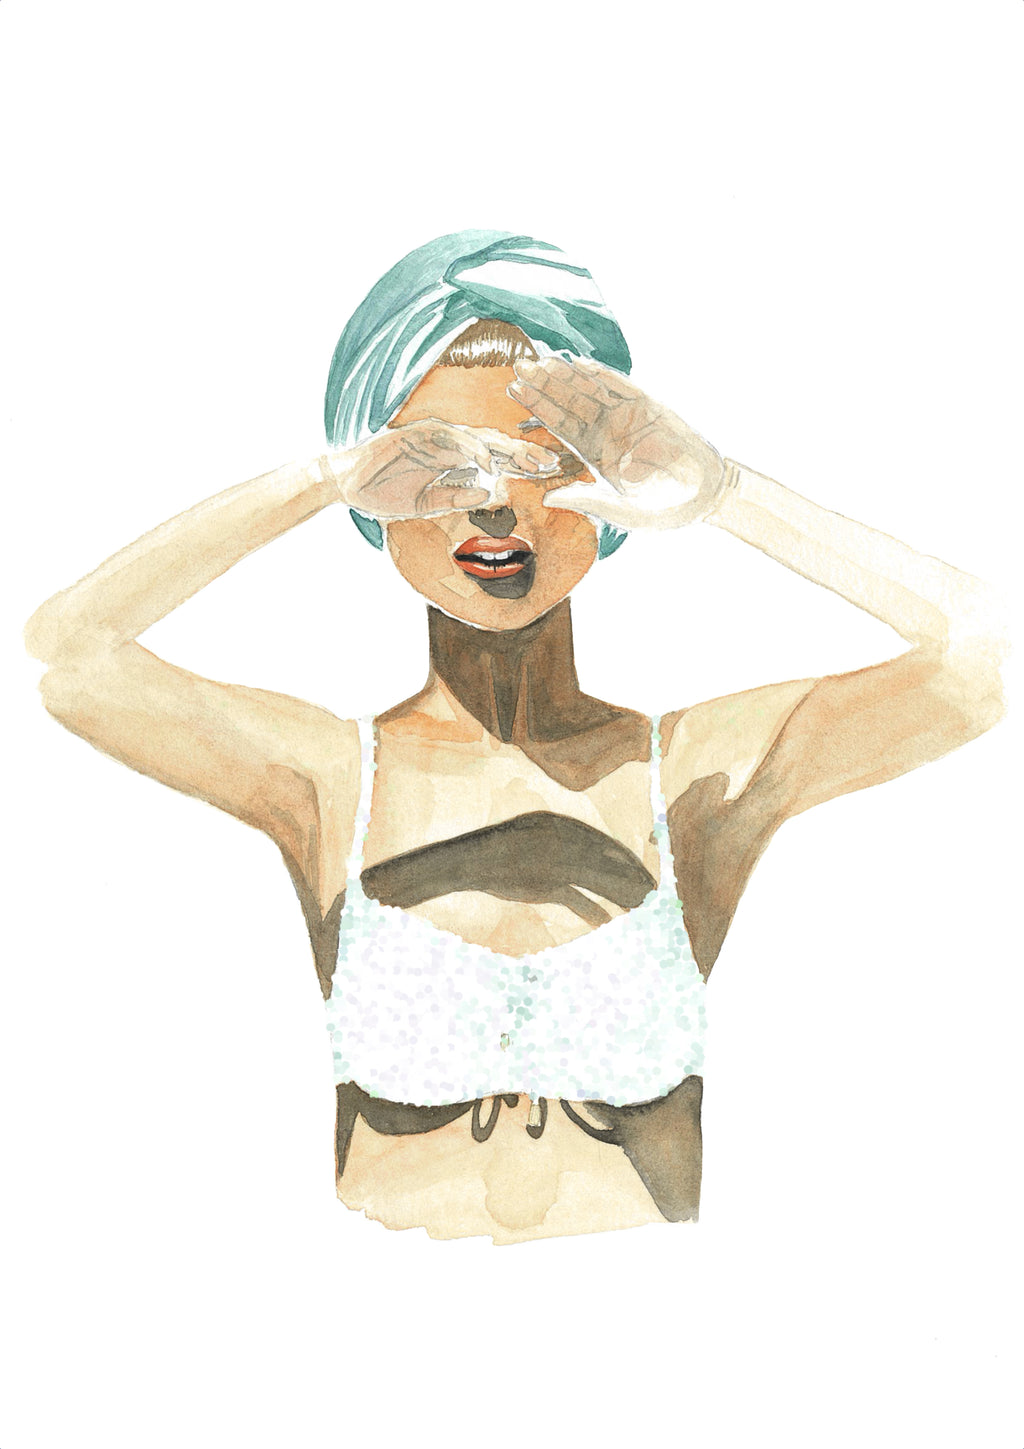 Impresión de acuarela original. Mujer con bikini y turbante tapándose los ojos. Disponible en tamaños A3 y A4